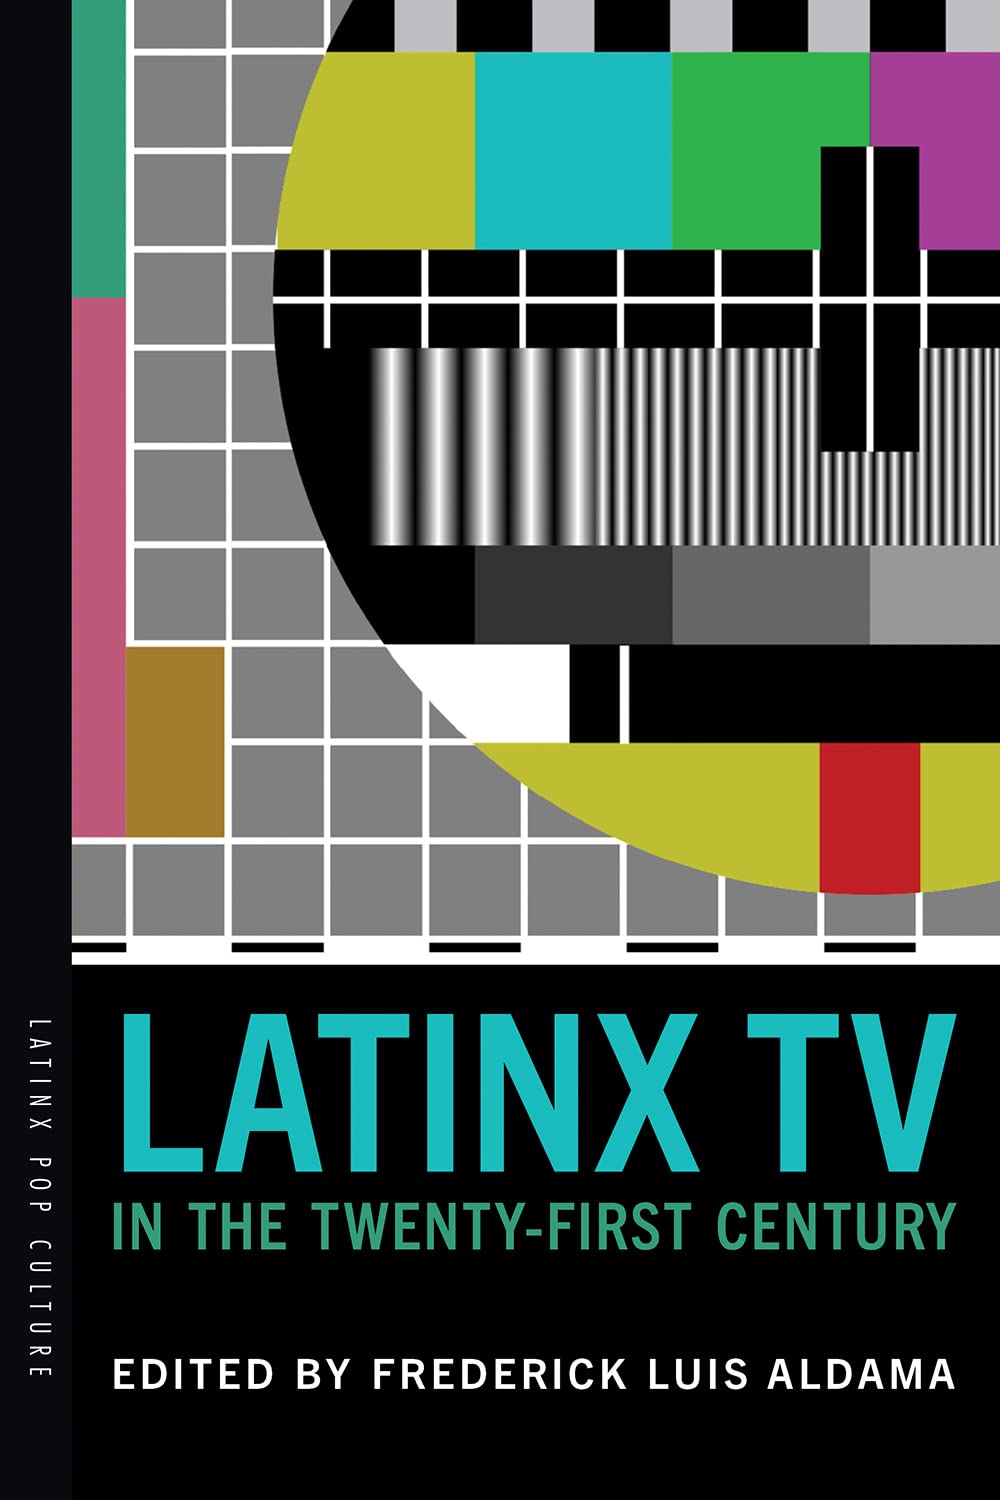 Latinx TV in the Twenty-First Century by Frederick Luis Aldama